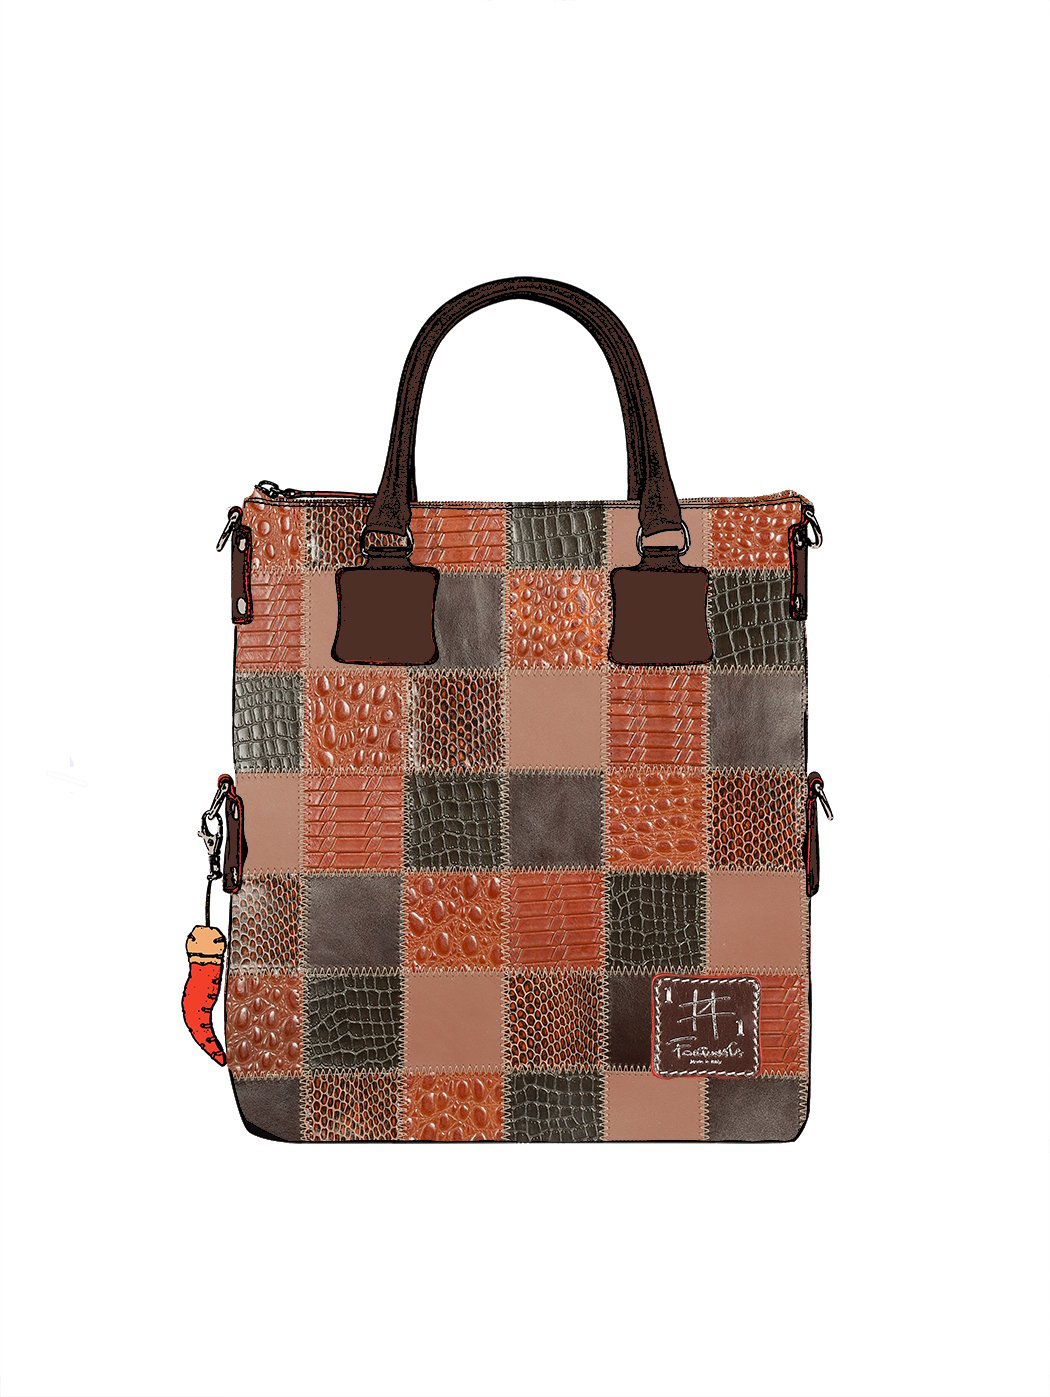 Дизайнерская сумка из коллекции Fortunata в стиле пэчворк коричневого цвета